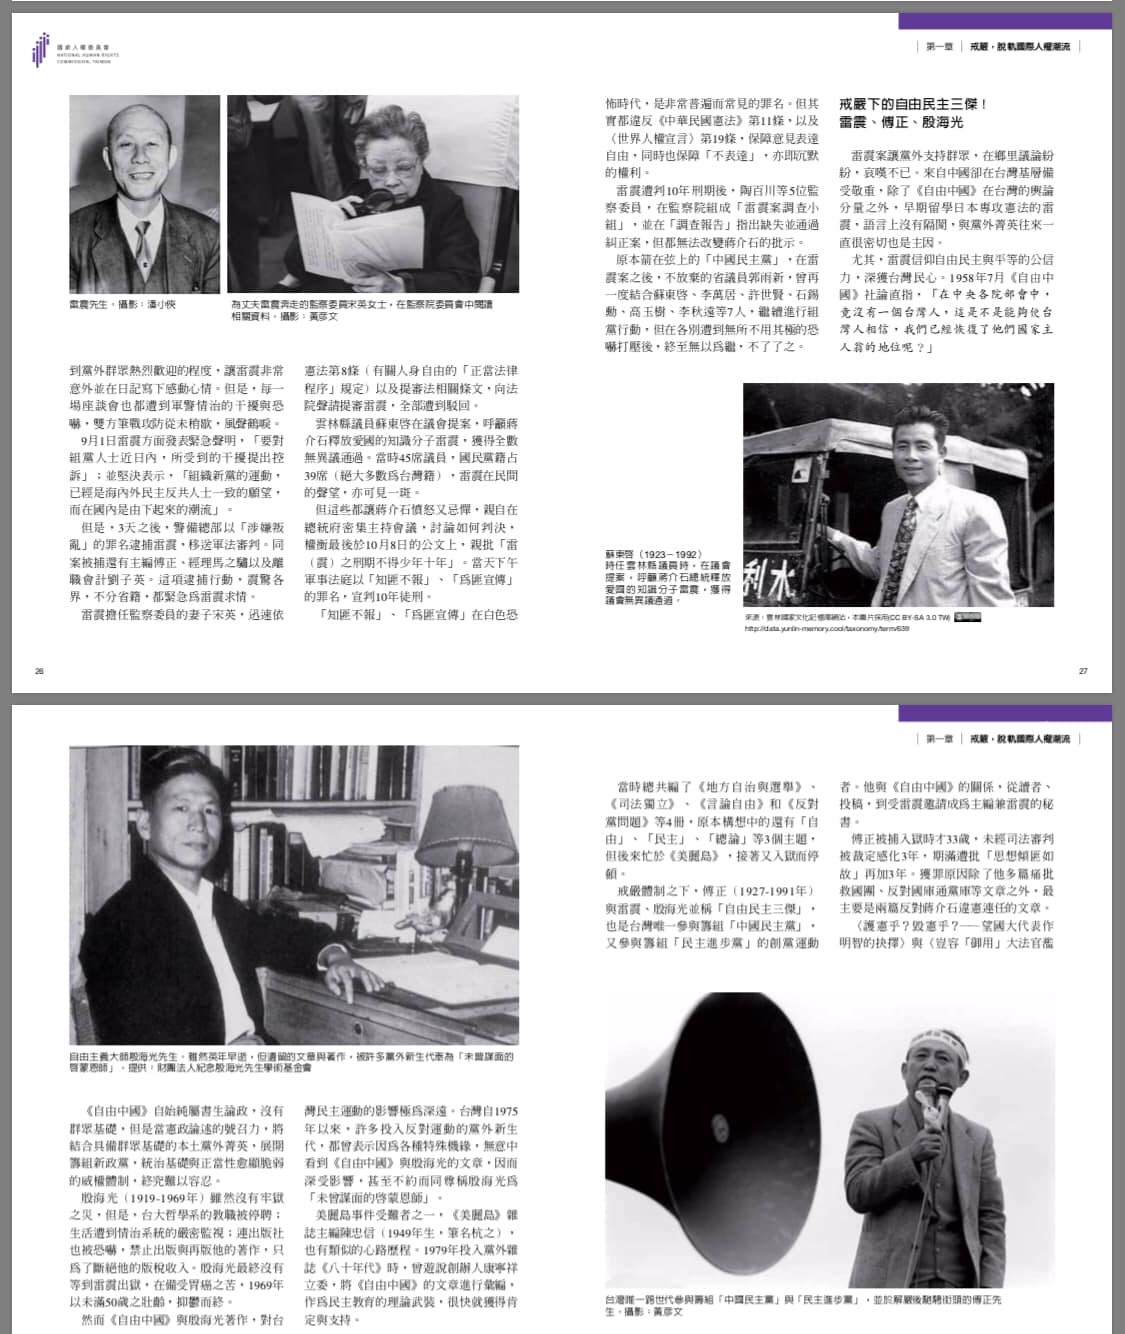 殷海光對台灣自由民主運動的影響